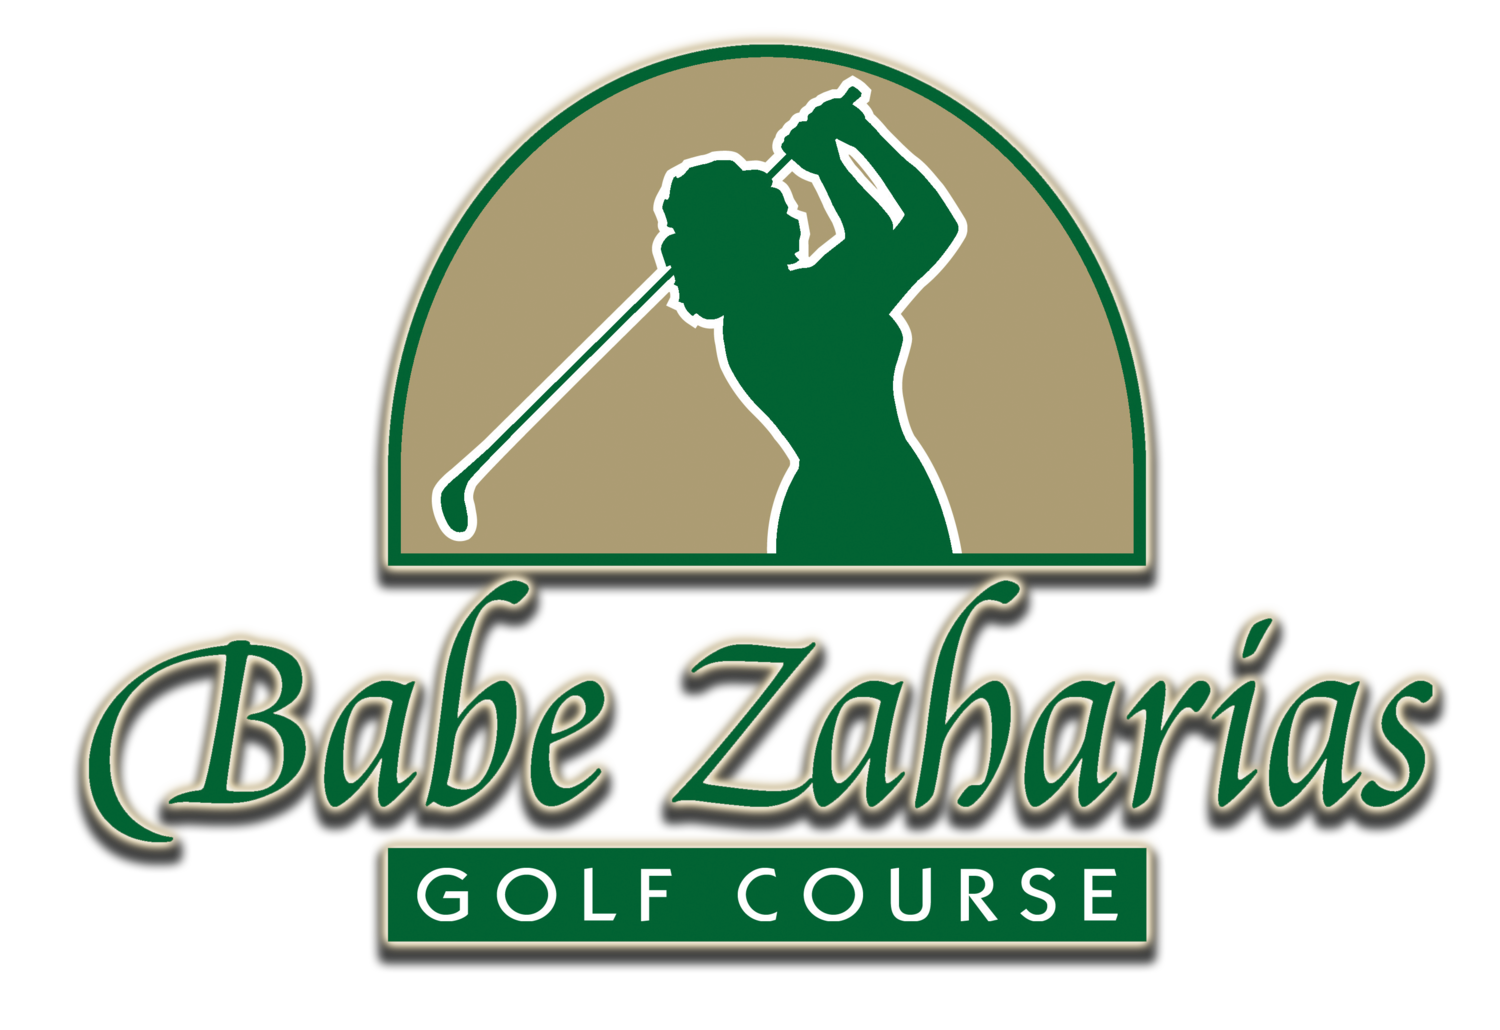 babe Zaharias golf course